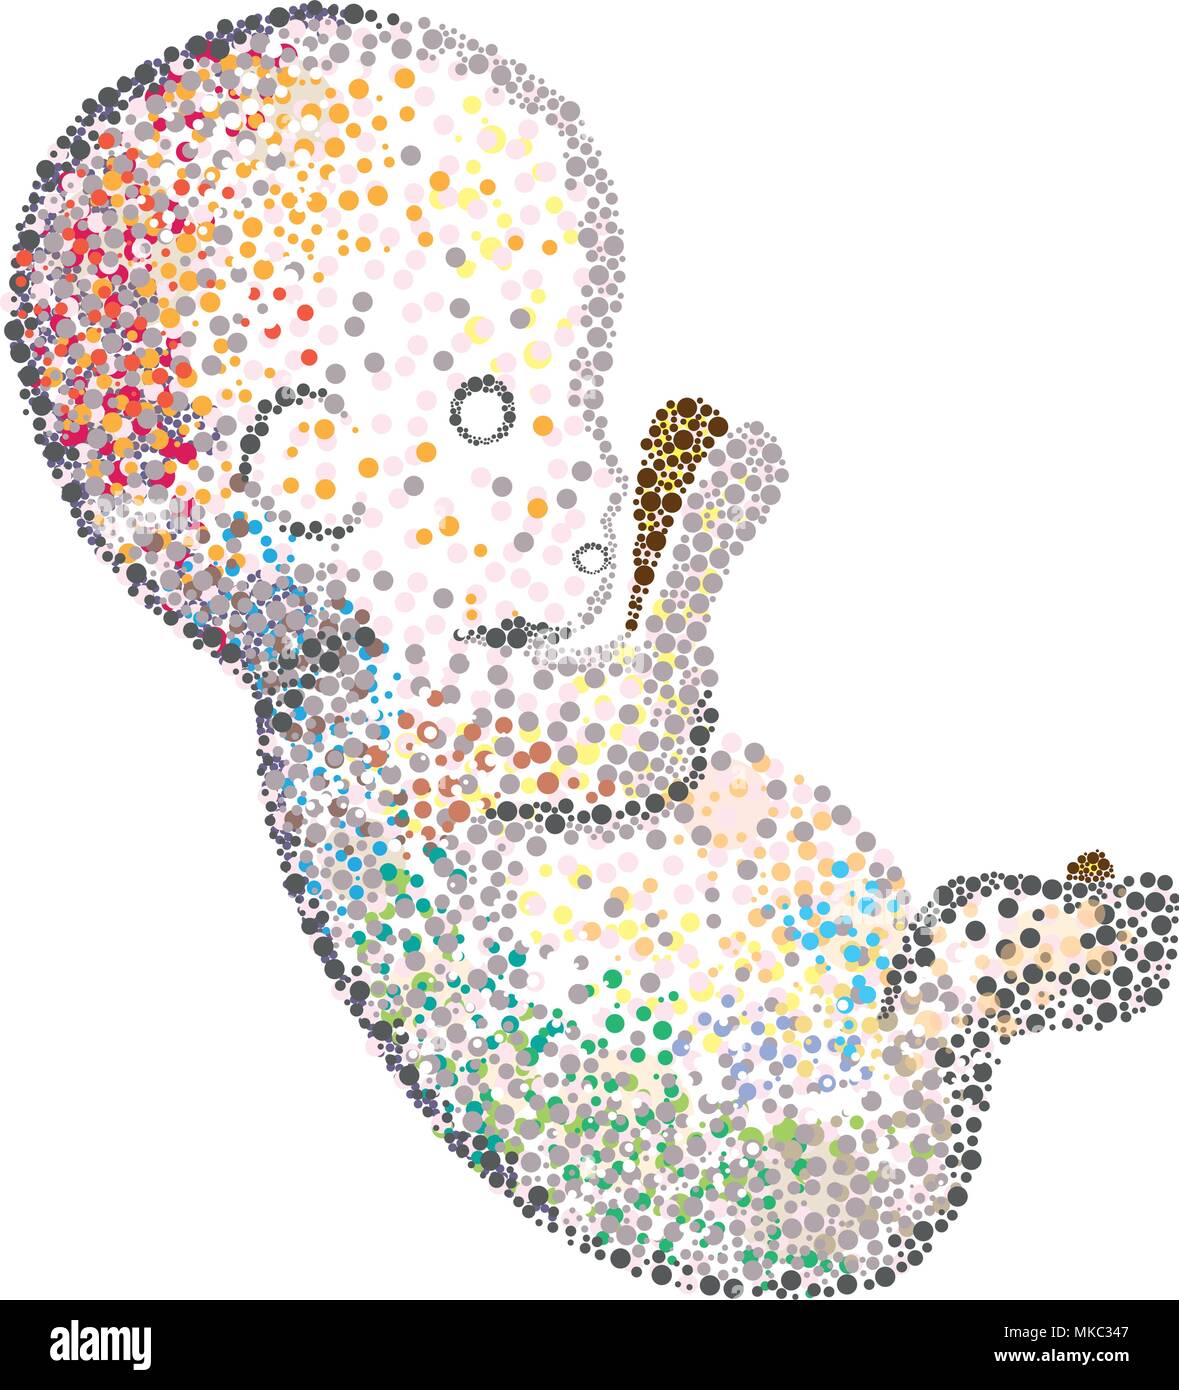 Foetus humain mosaic repéré représentation de lignage cellulaire unique de dessiner dans la biologie du développement. Carte d'anniversaire des idées ! Illustration de Vecteur